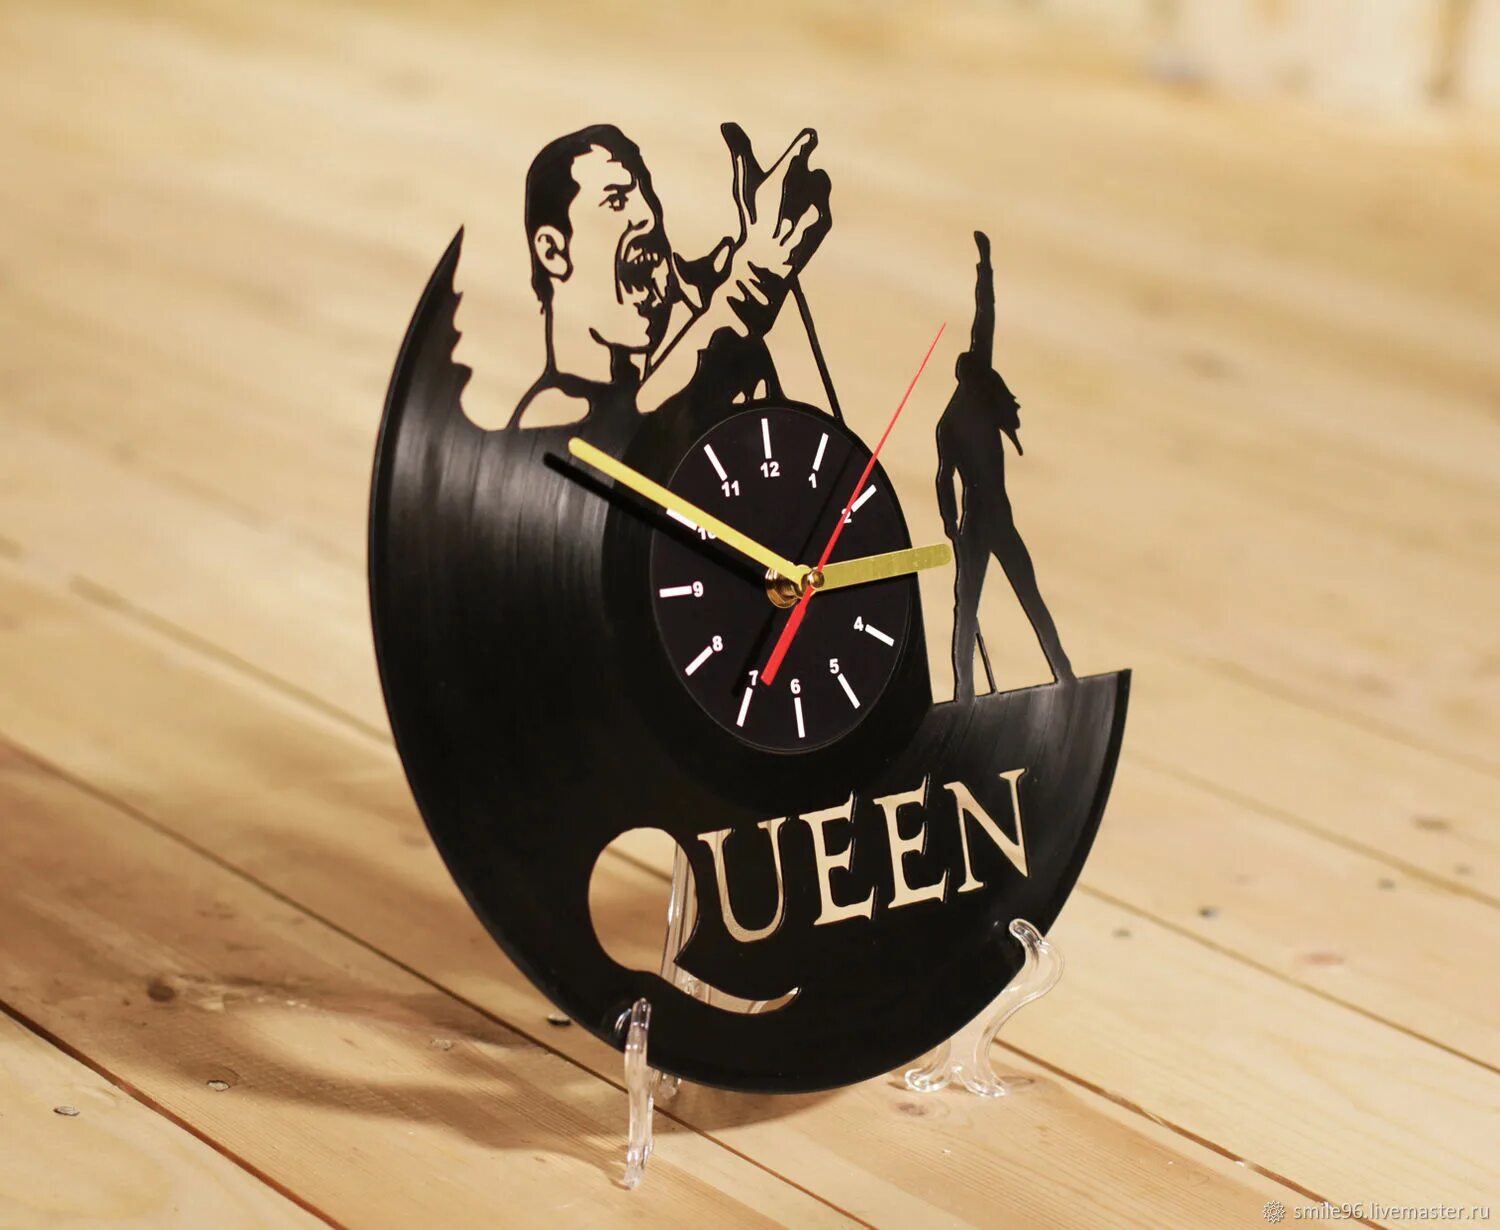 Часы из виниловых пластинок. Часы из виниловых пластинок Квин. Часы из виниловой пластинки Queen. Часы из винила Queen. Купить виниловую пластинку цена